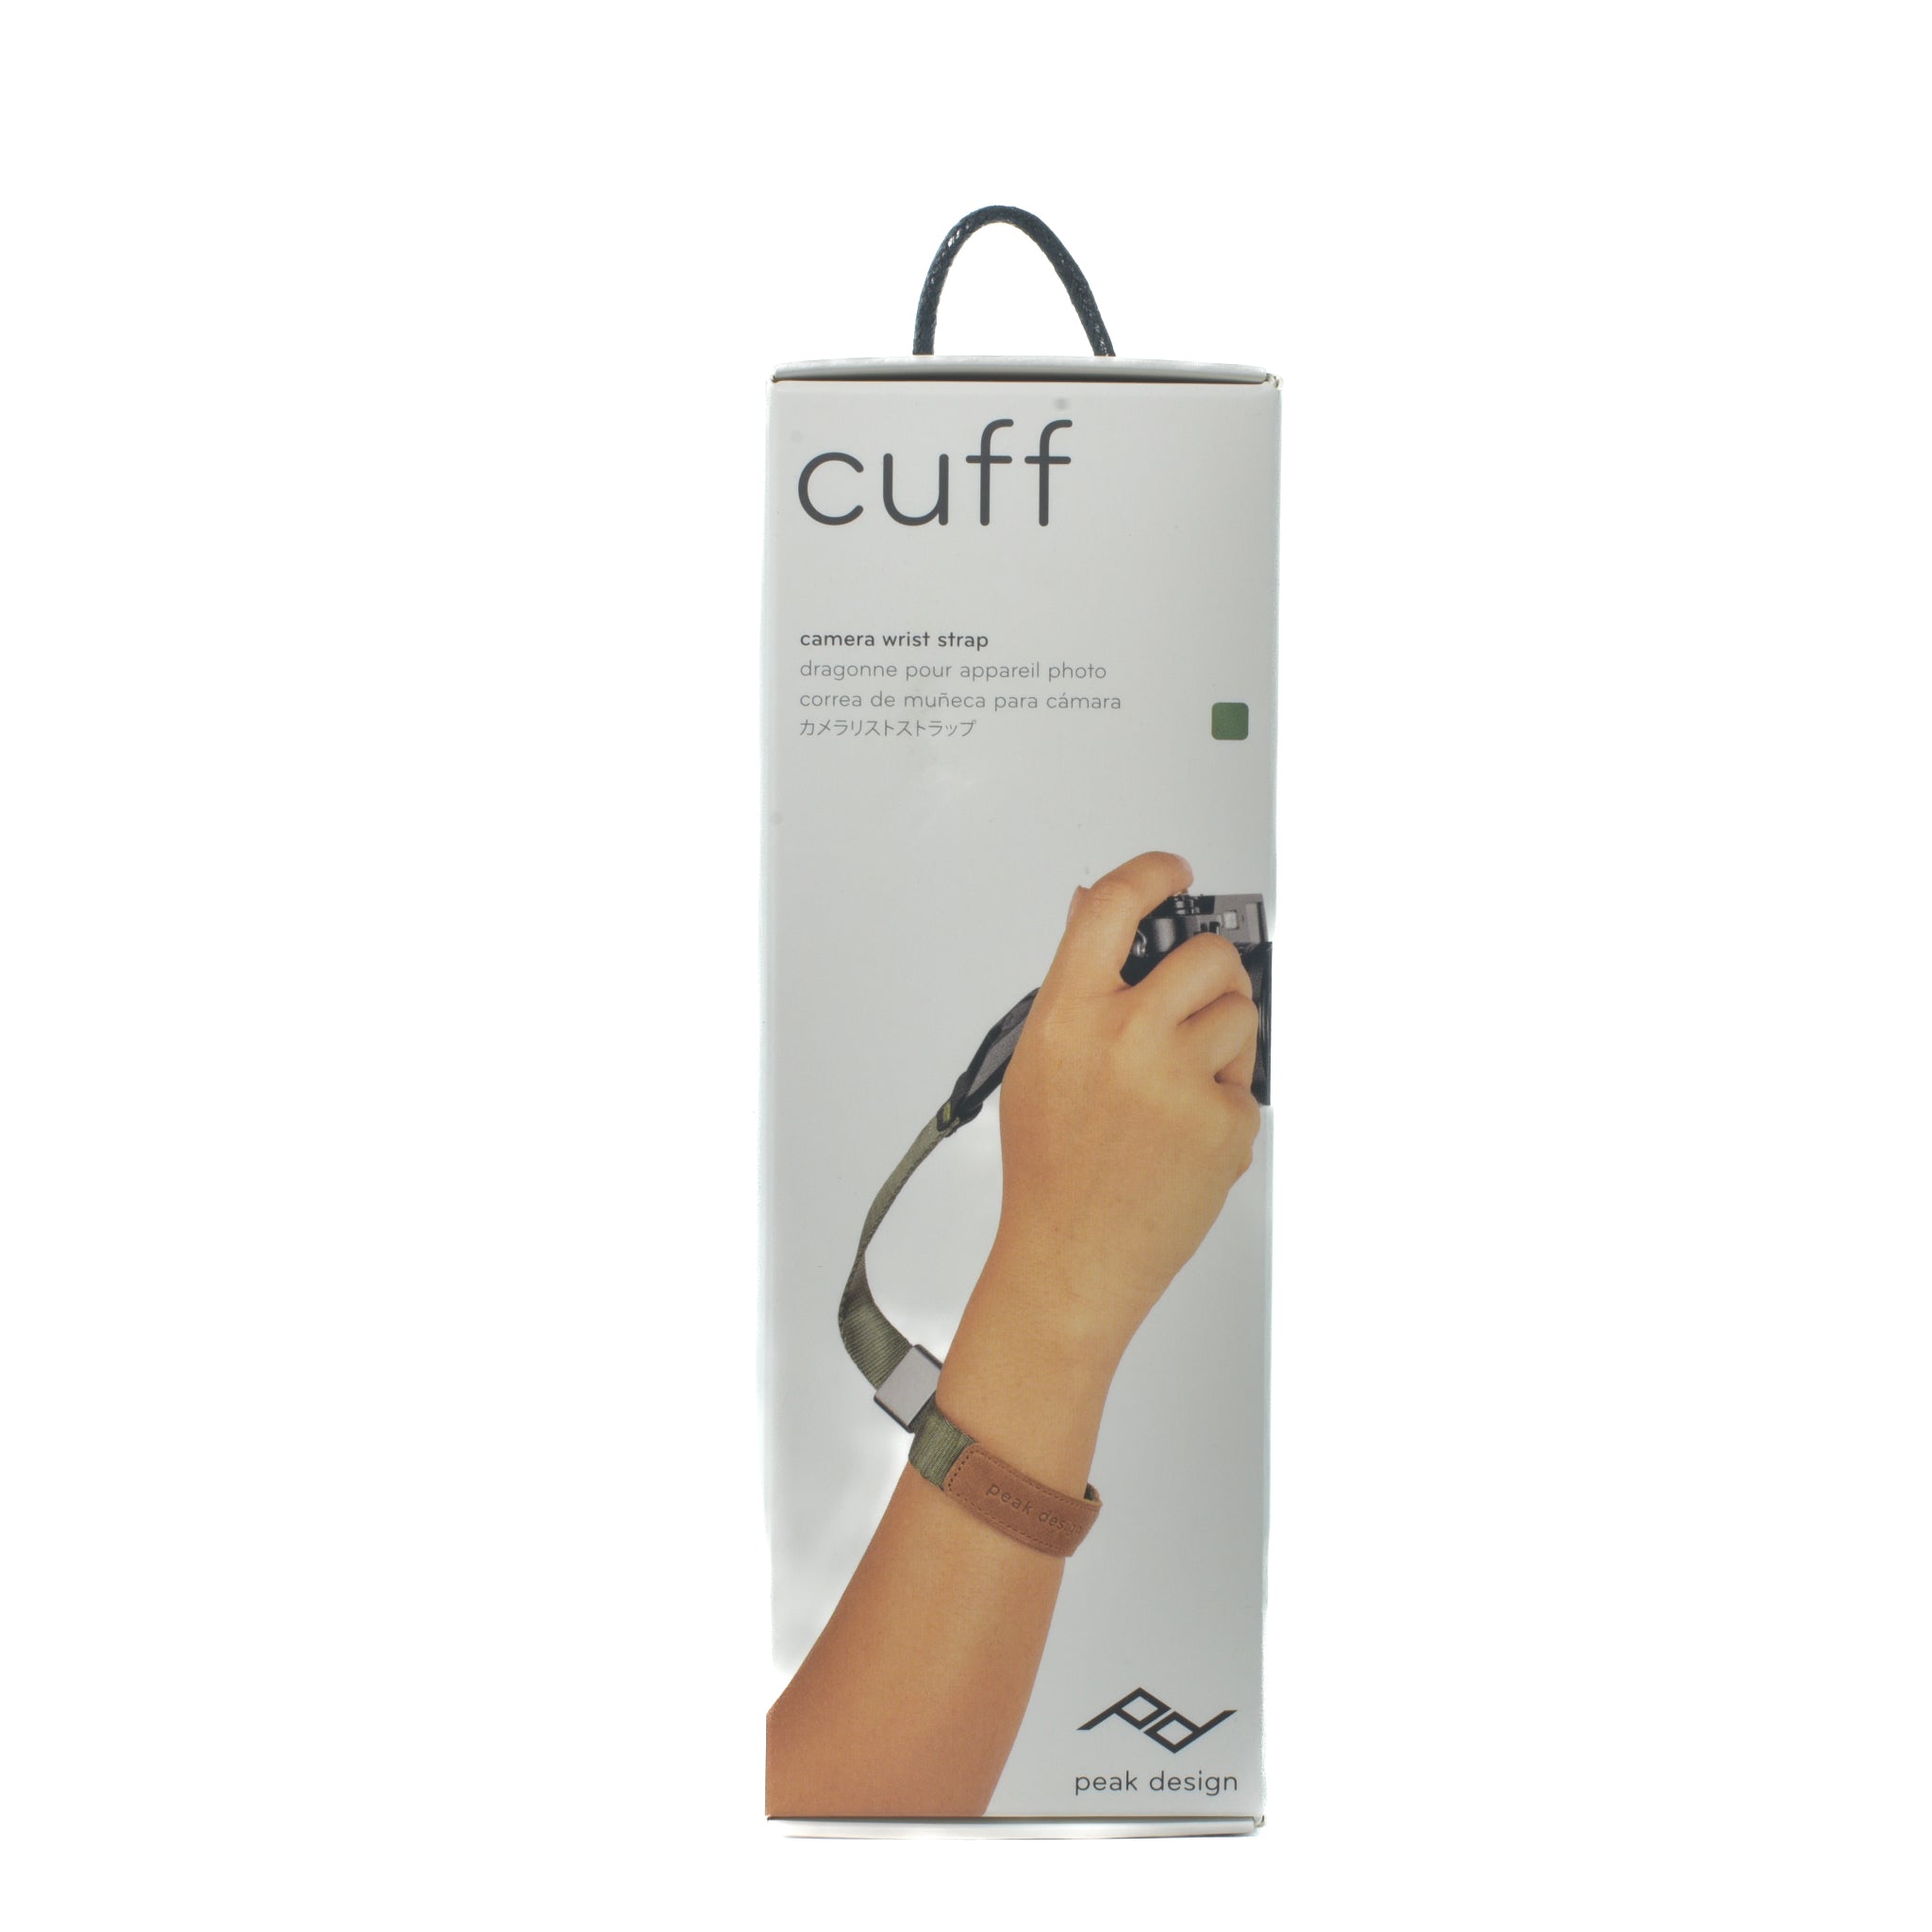 Peak Design “Cuff” Camera Wrist Strap